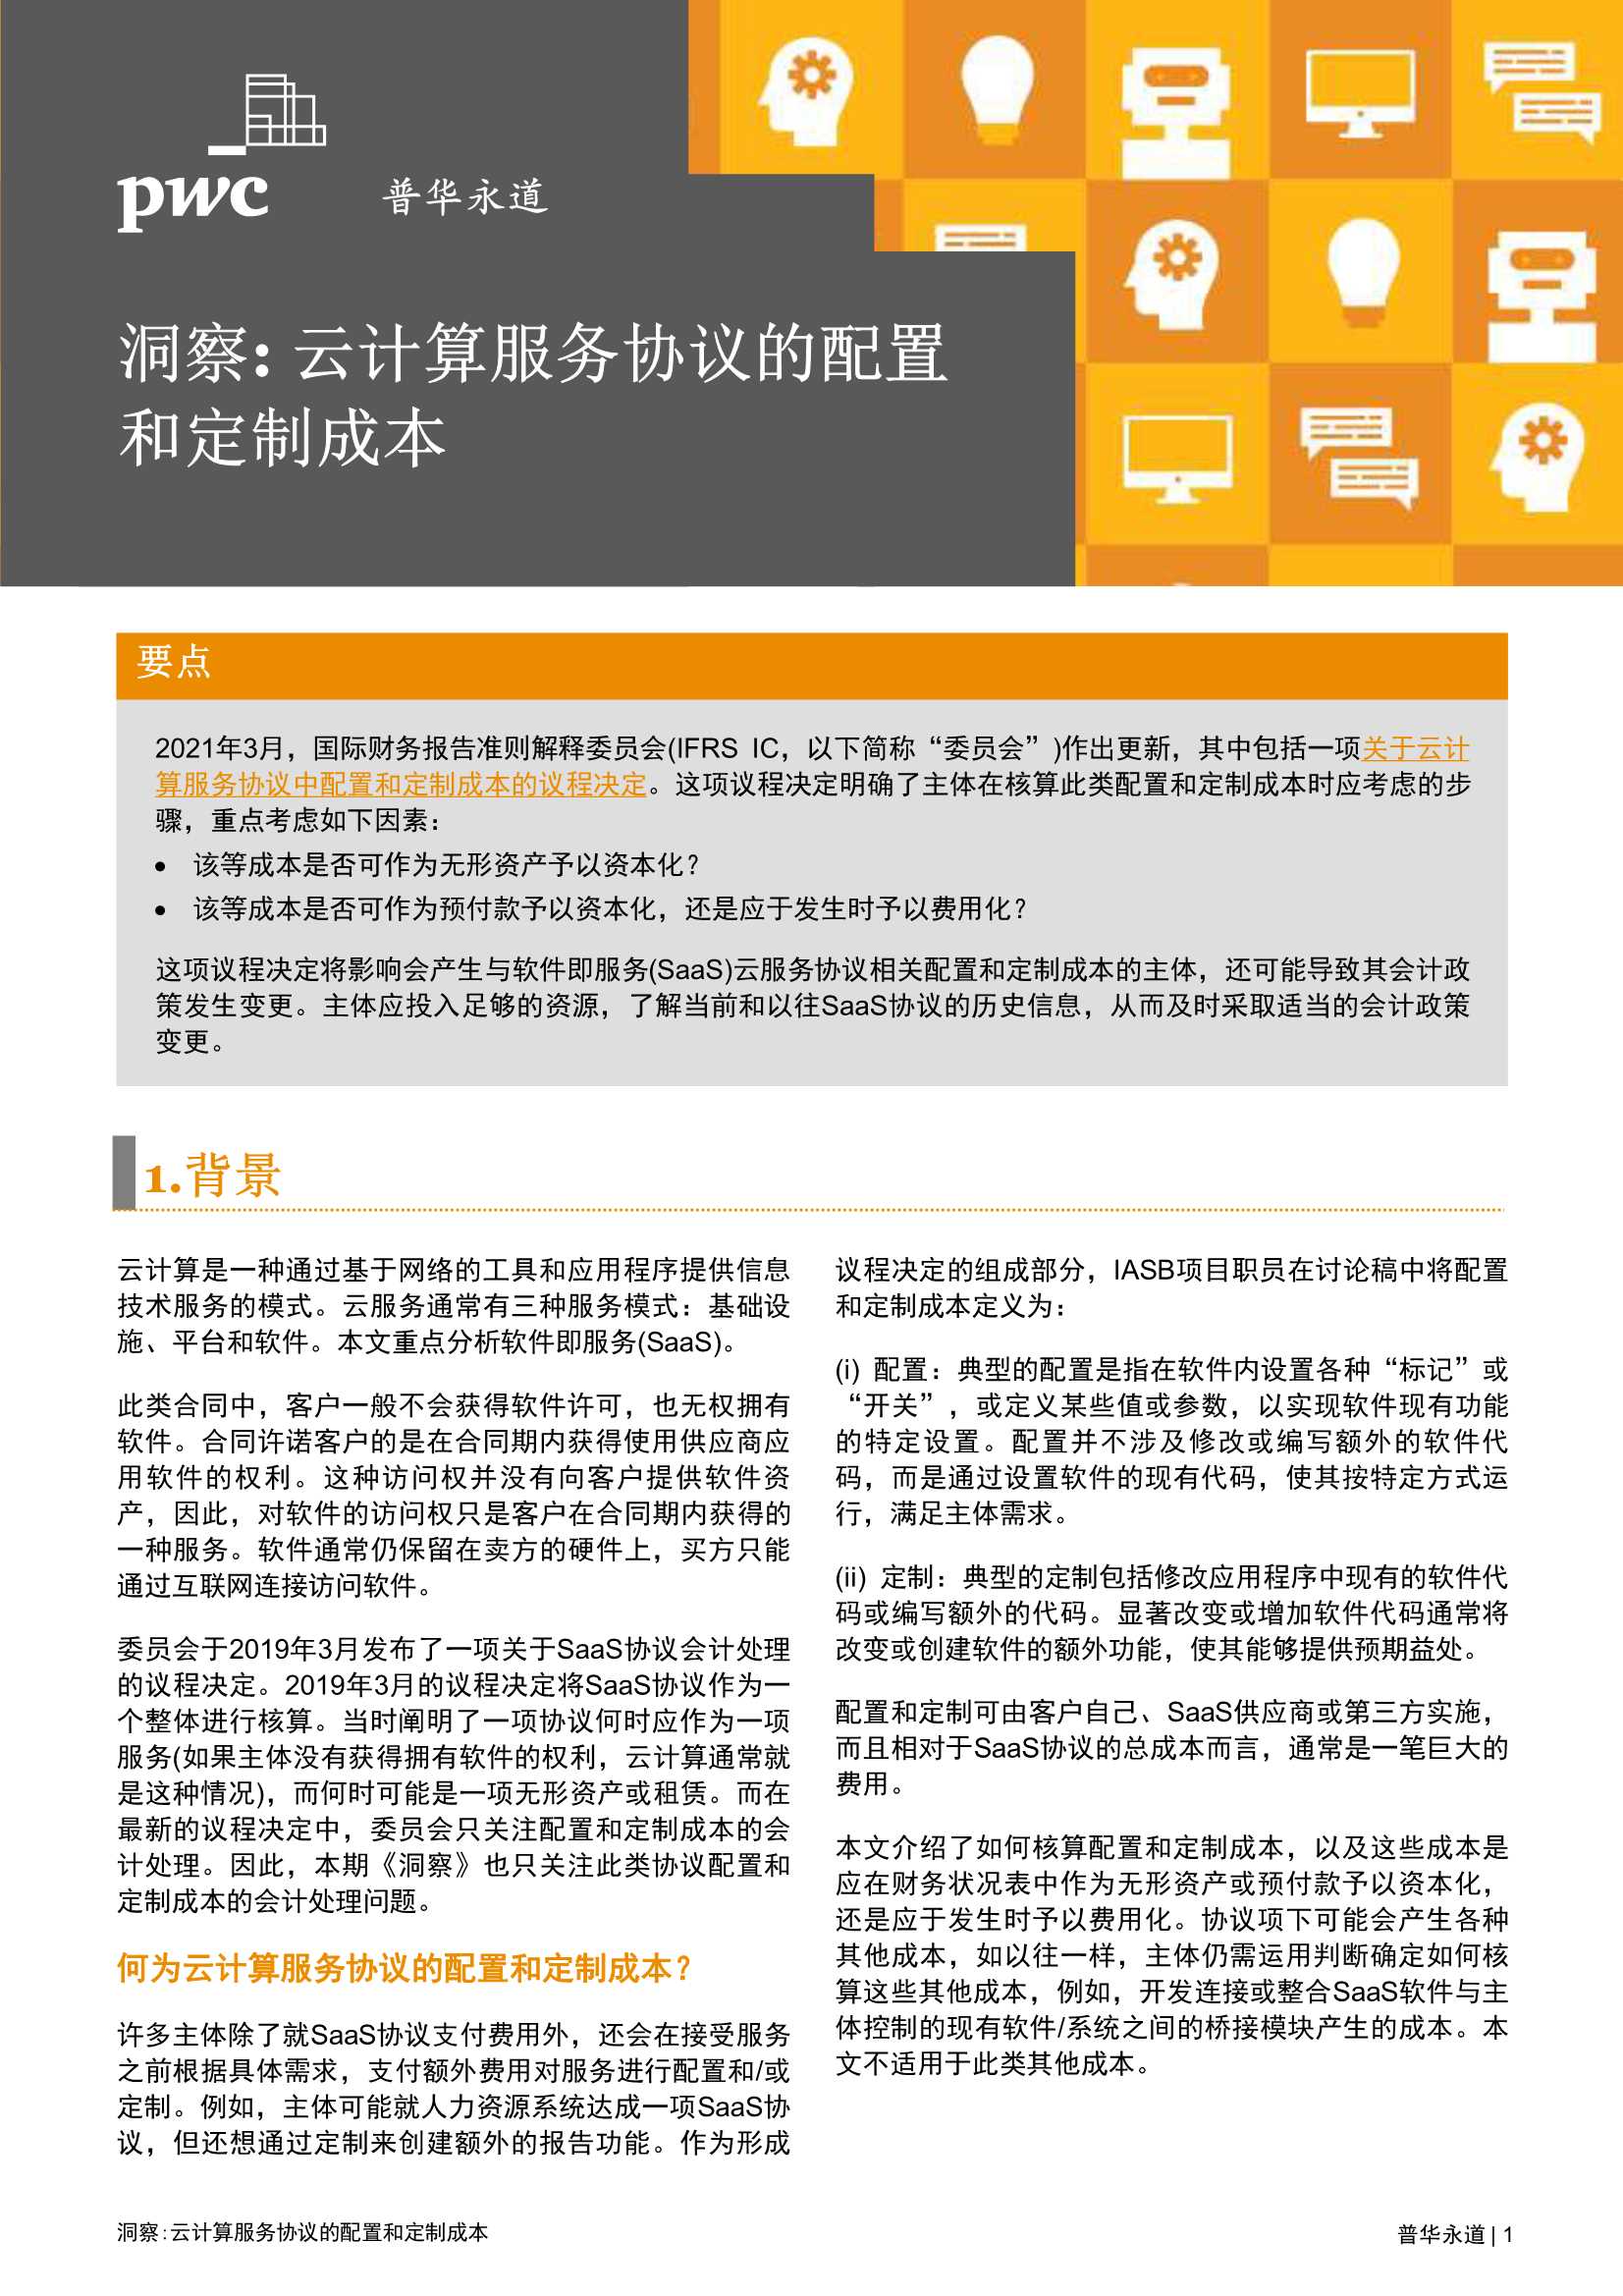 普华永道-云计算服务协议的配置和定制成本 -2021.11-8页